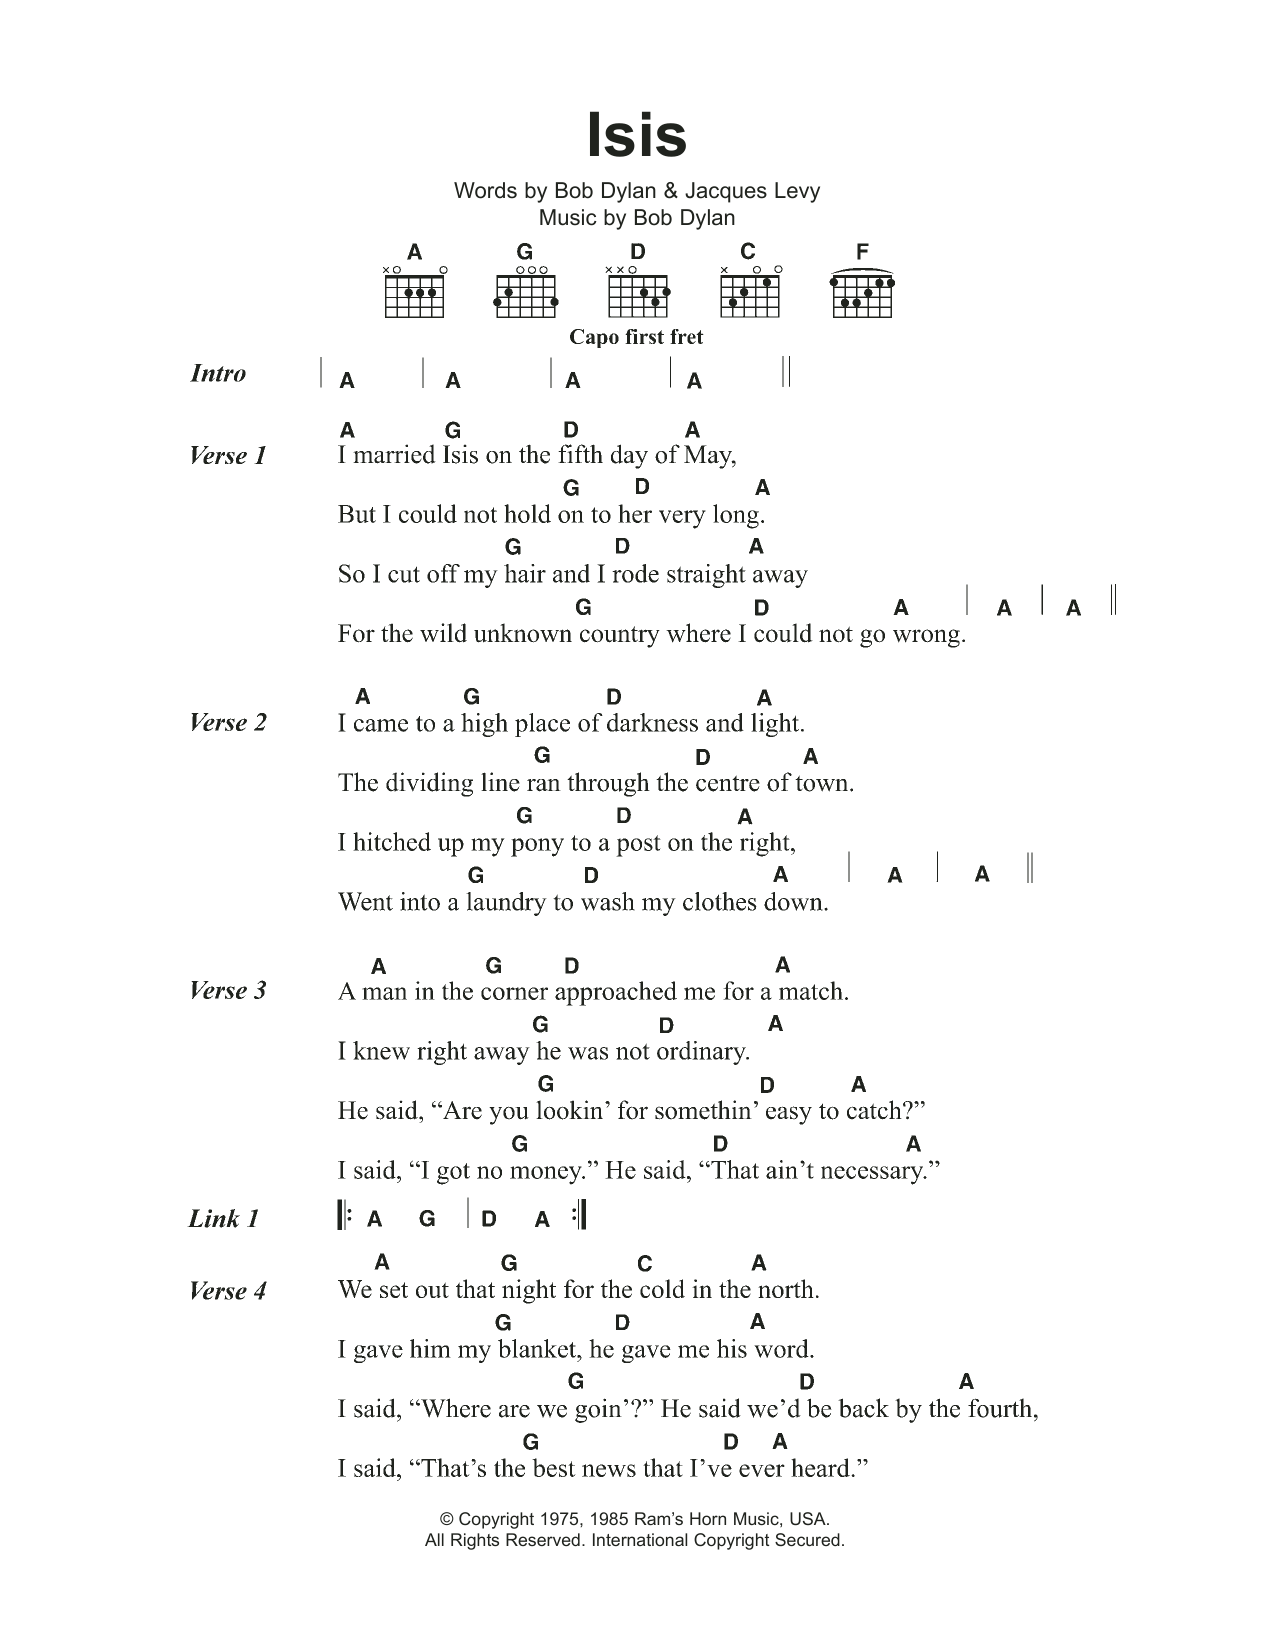 Bob Dylan Isis Sheet Music Notes & Chords for Lyrics & Chords - Download or Print PDF